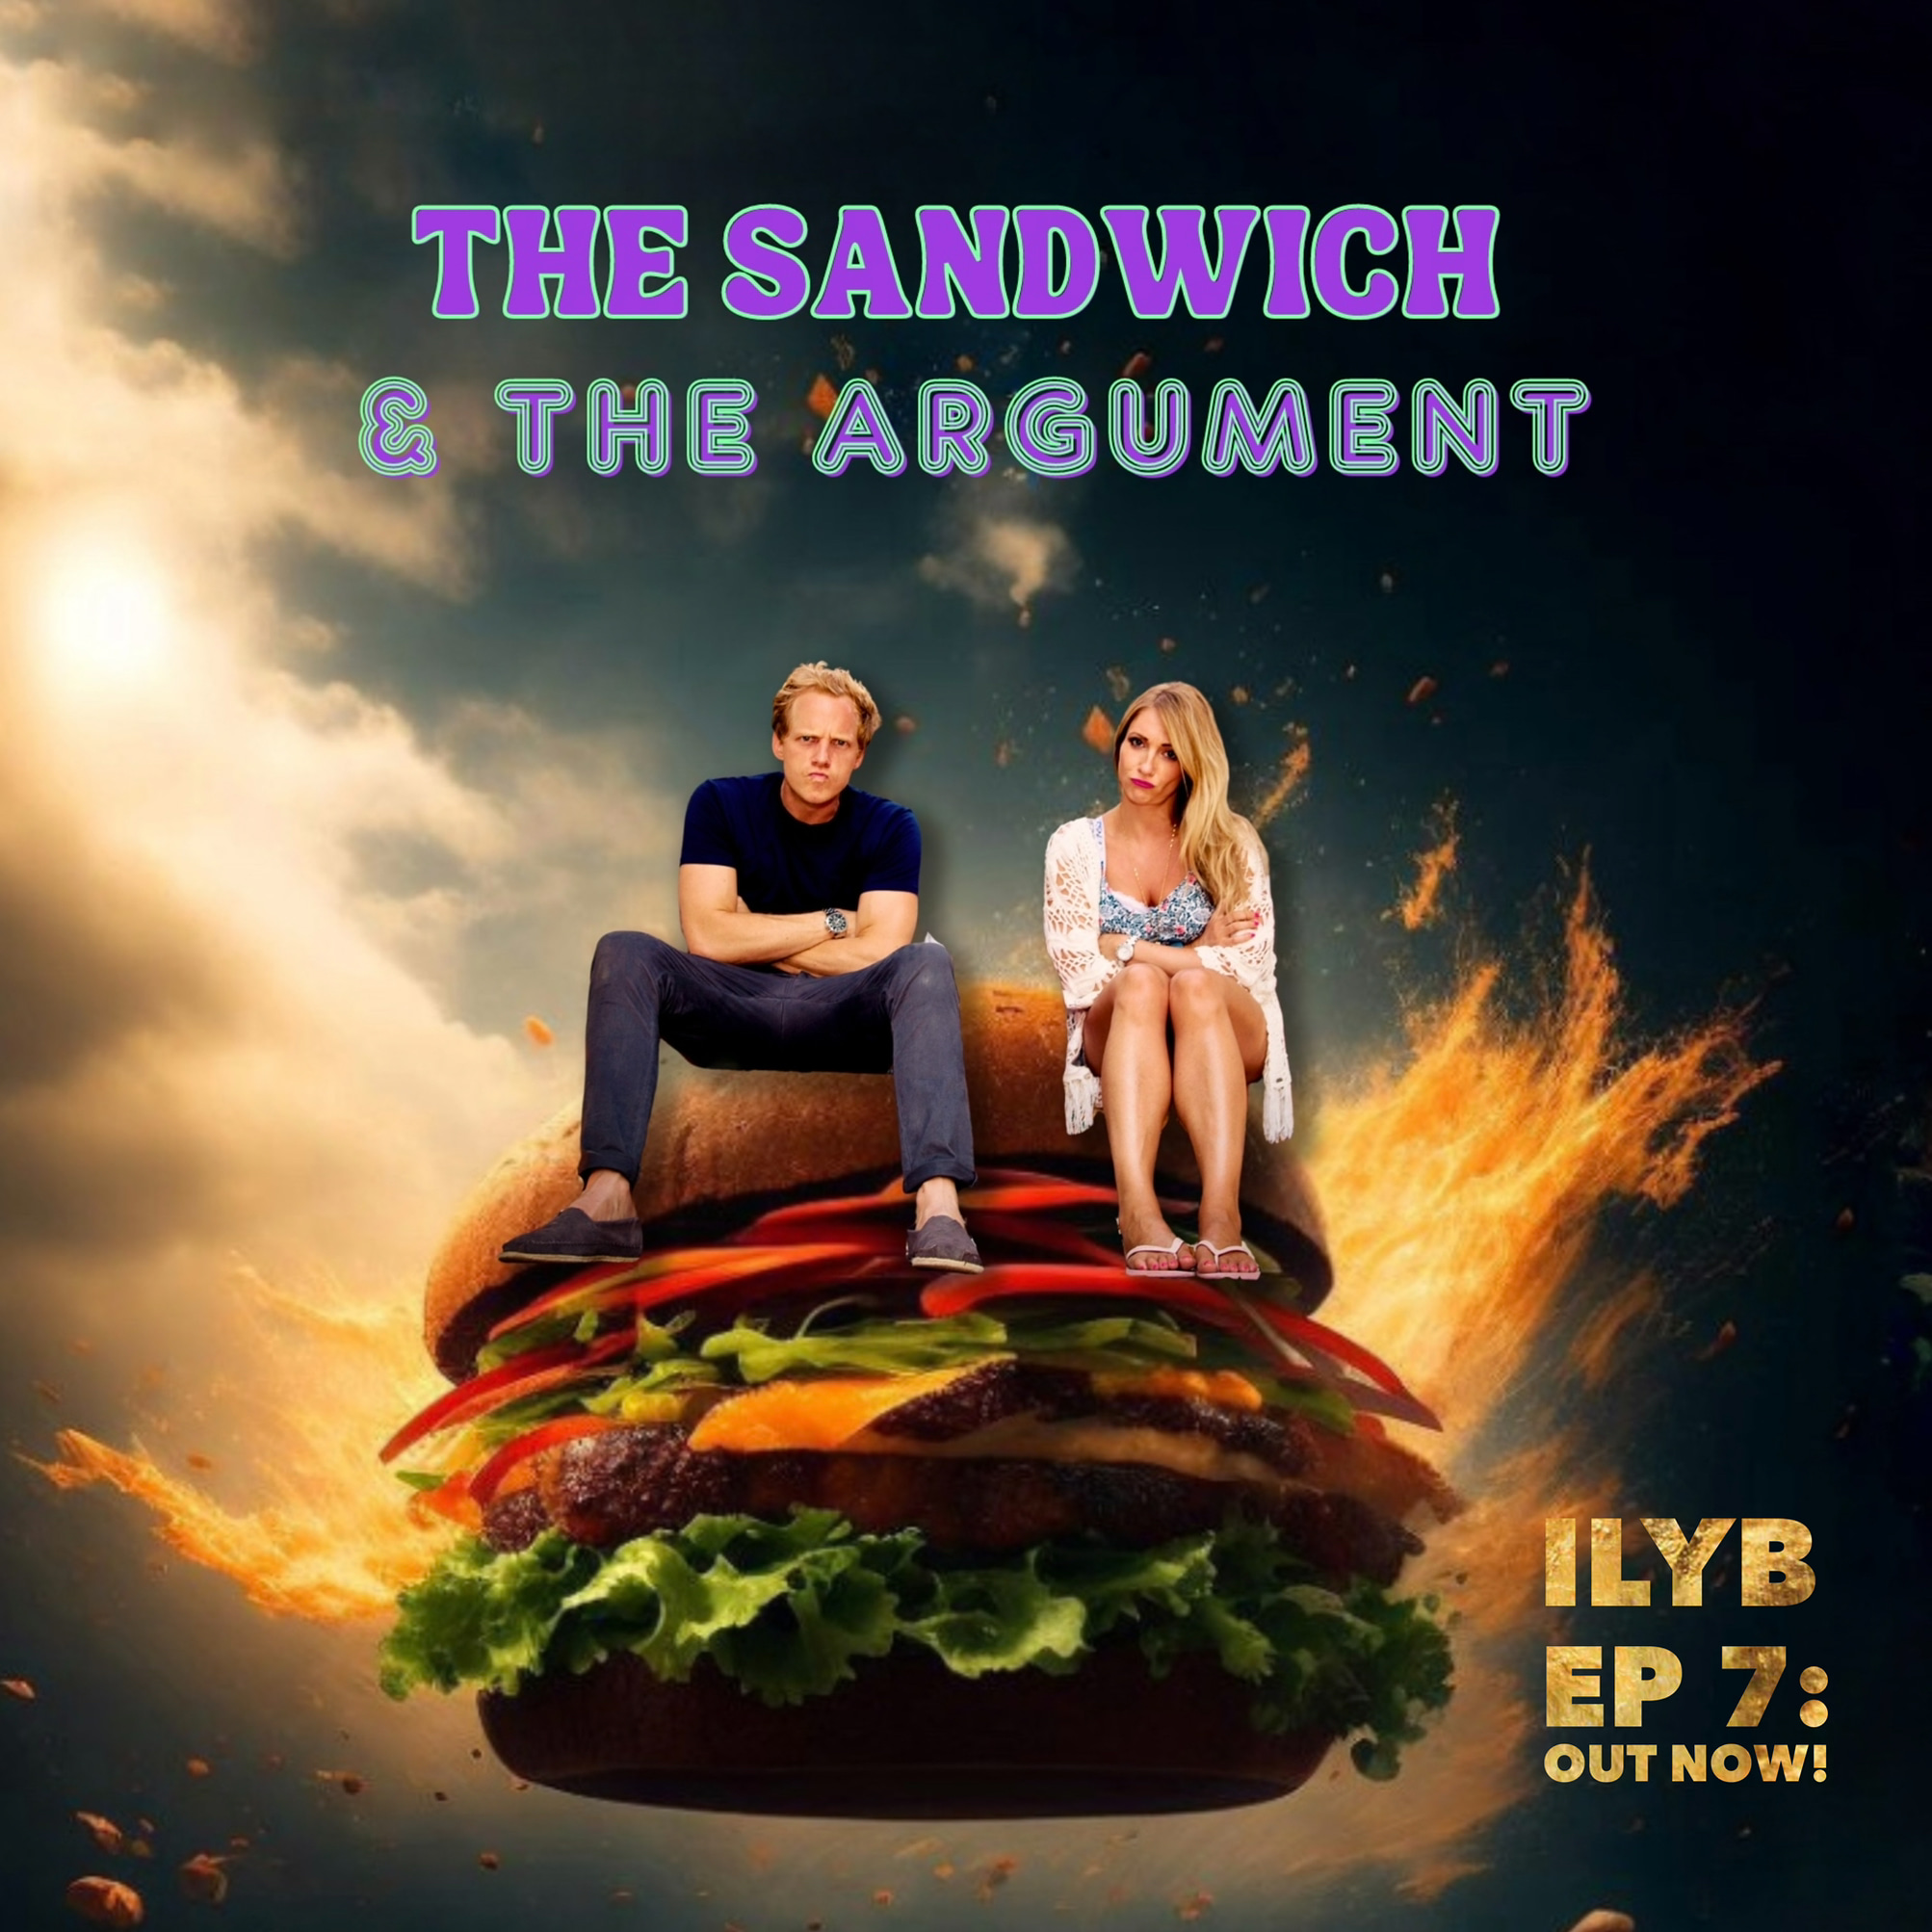 The Sandwich & the Argument